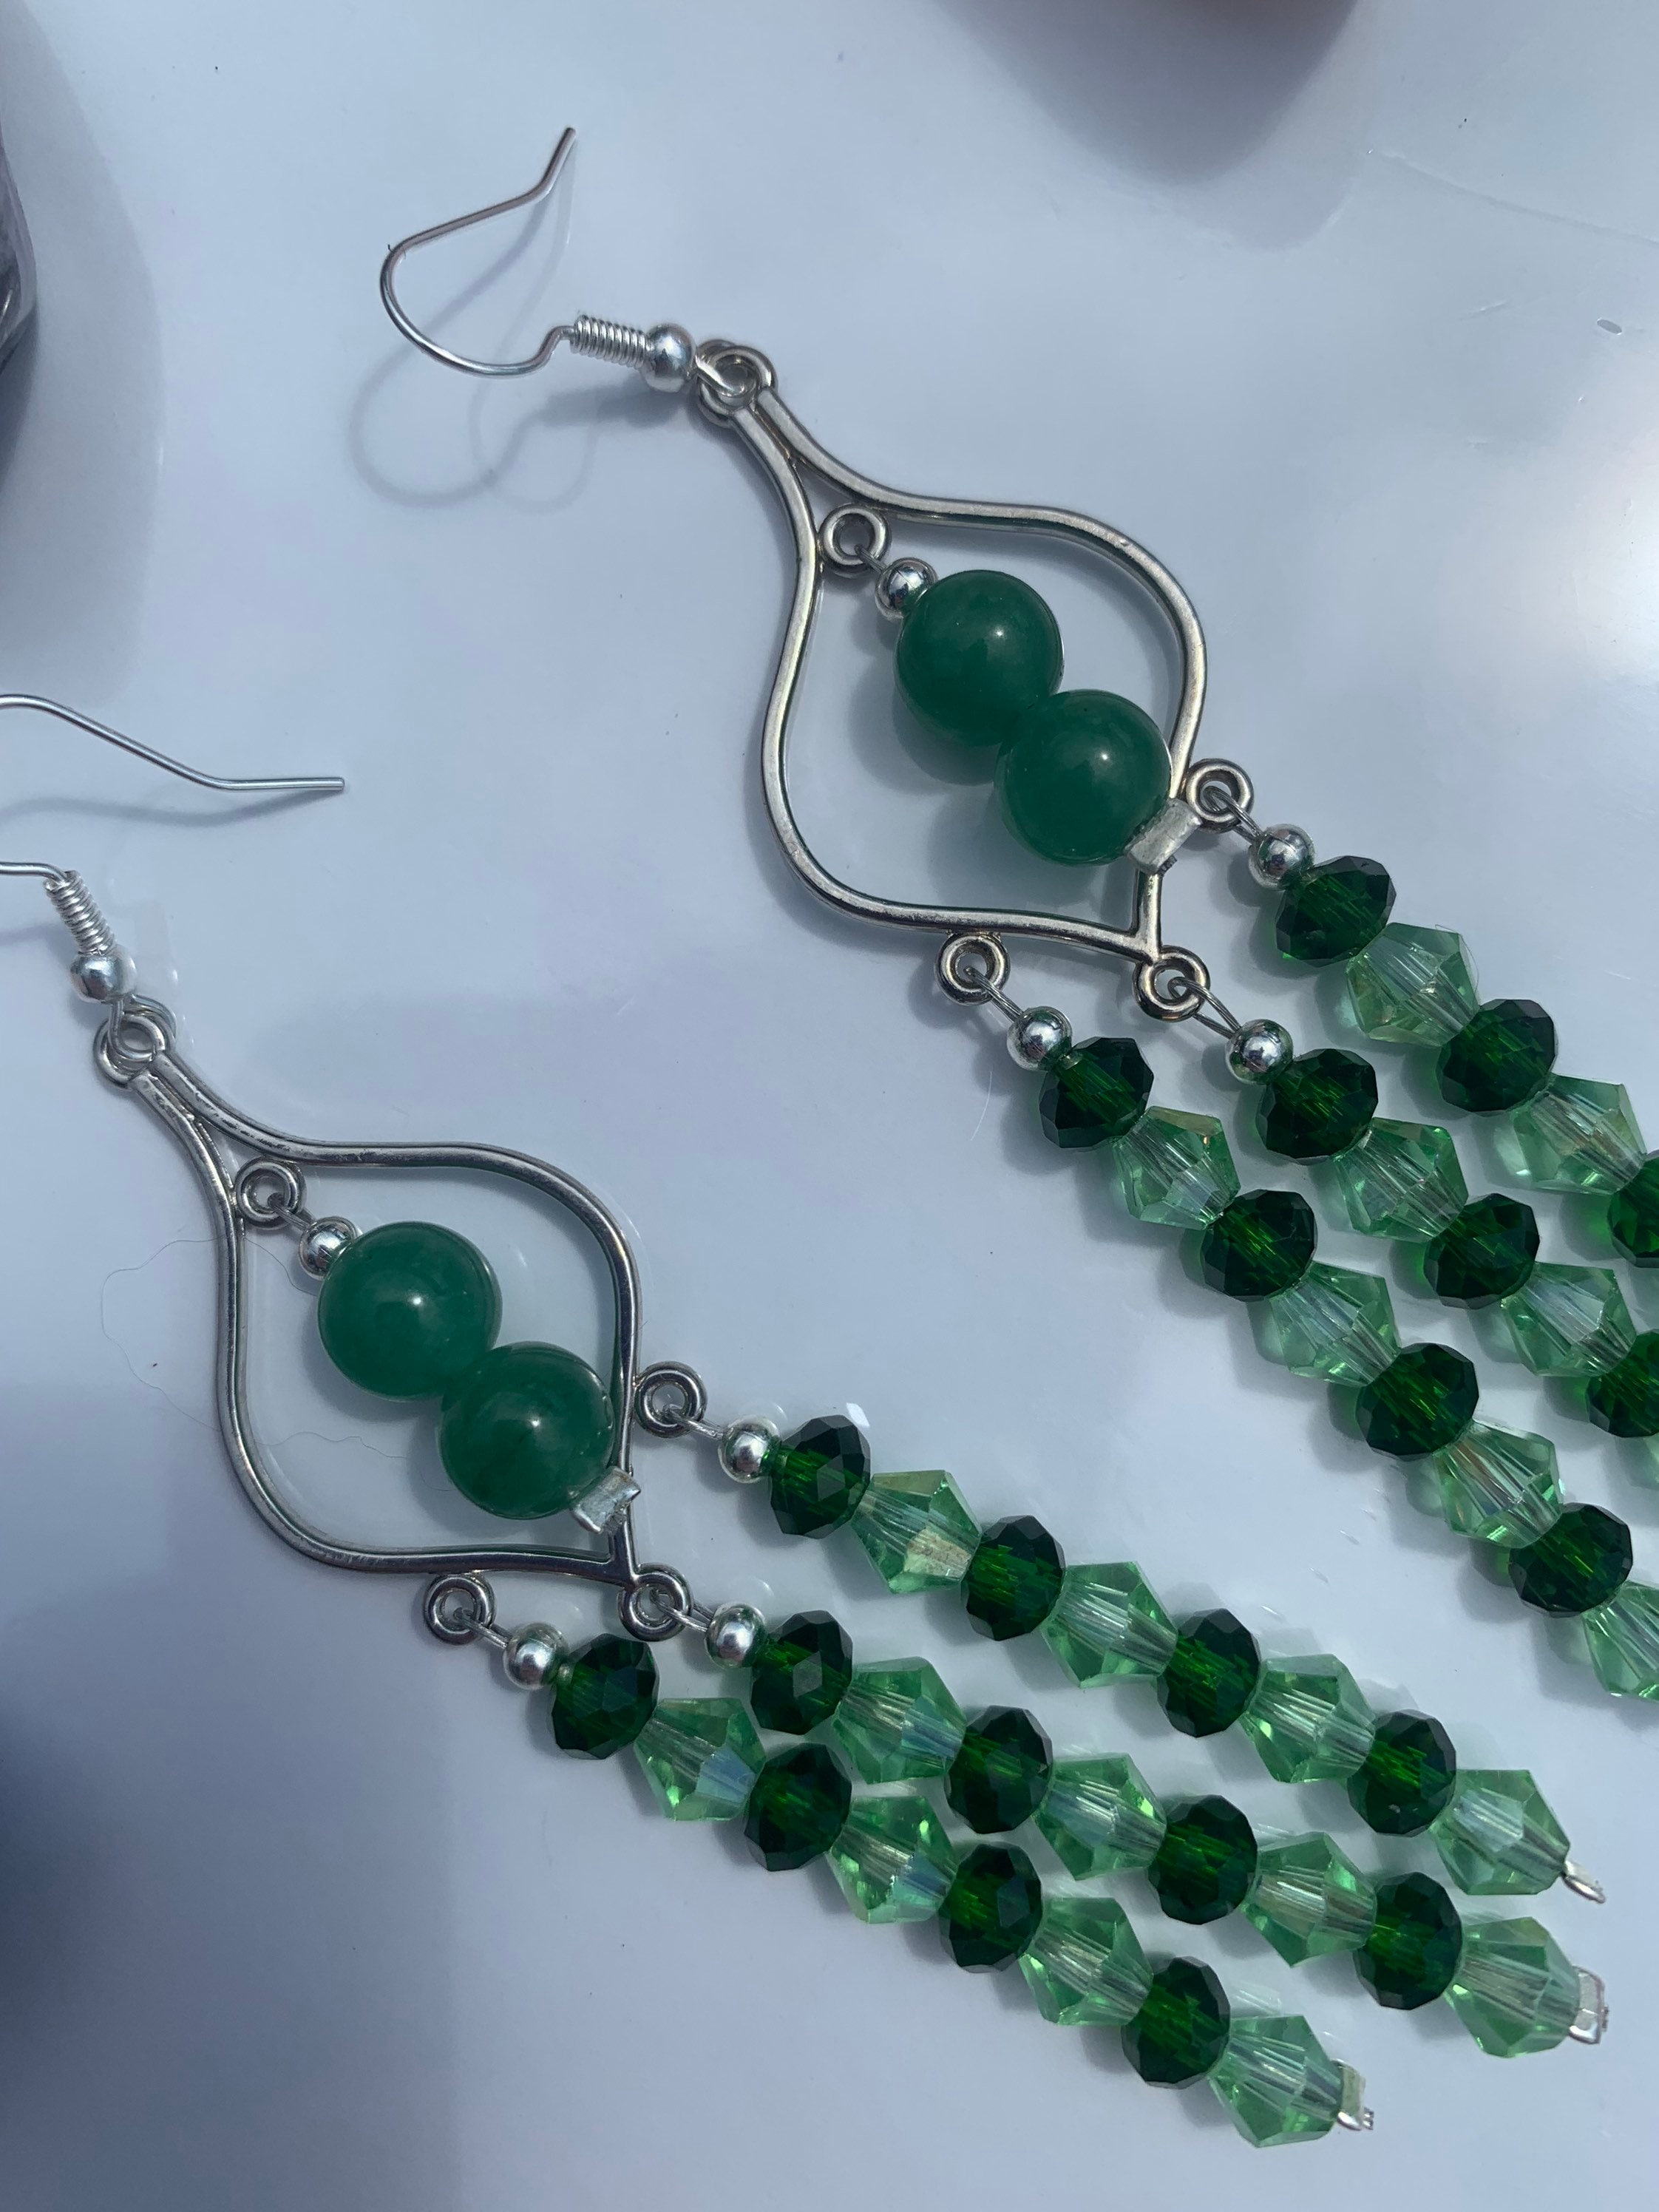 Howlite Crystal Silver Chandelier Statement Dangling Earrings Handmade Earrings Gift for Witch Hippie Jewelry Stone Earrings